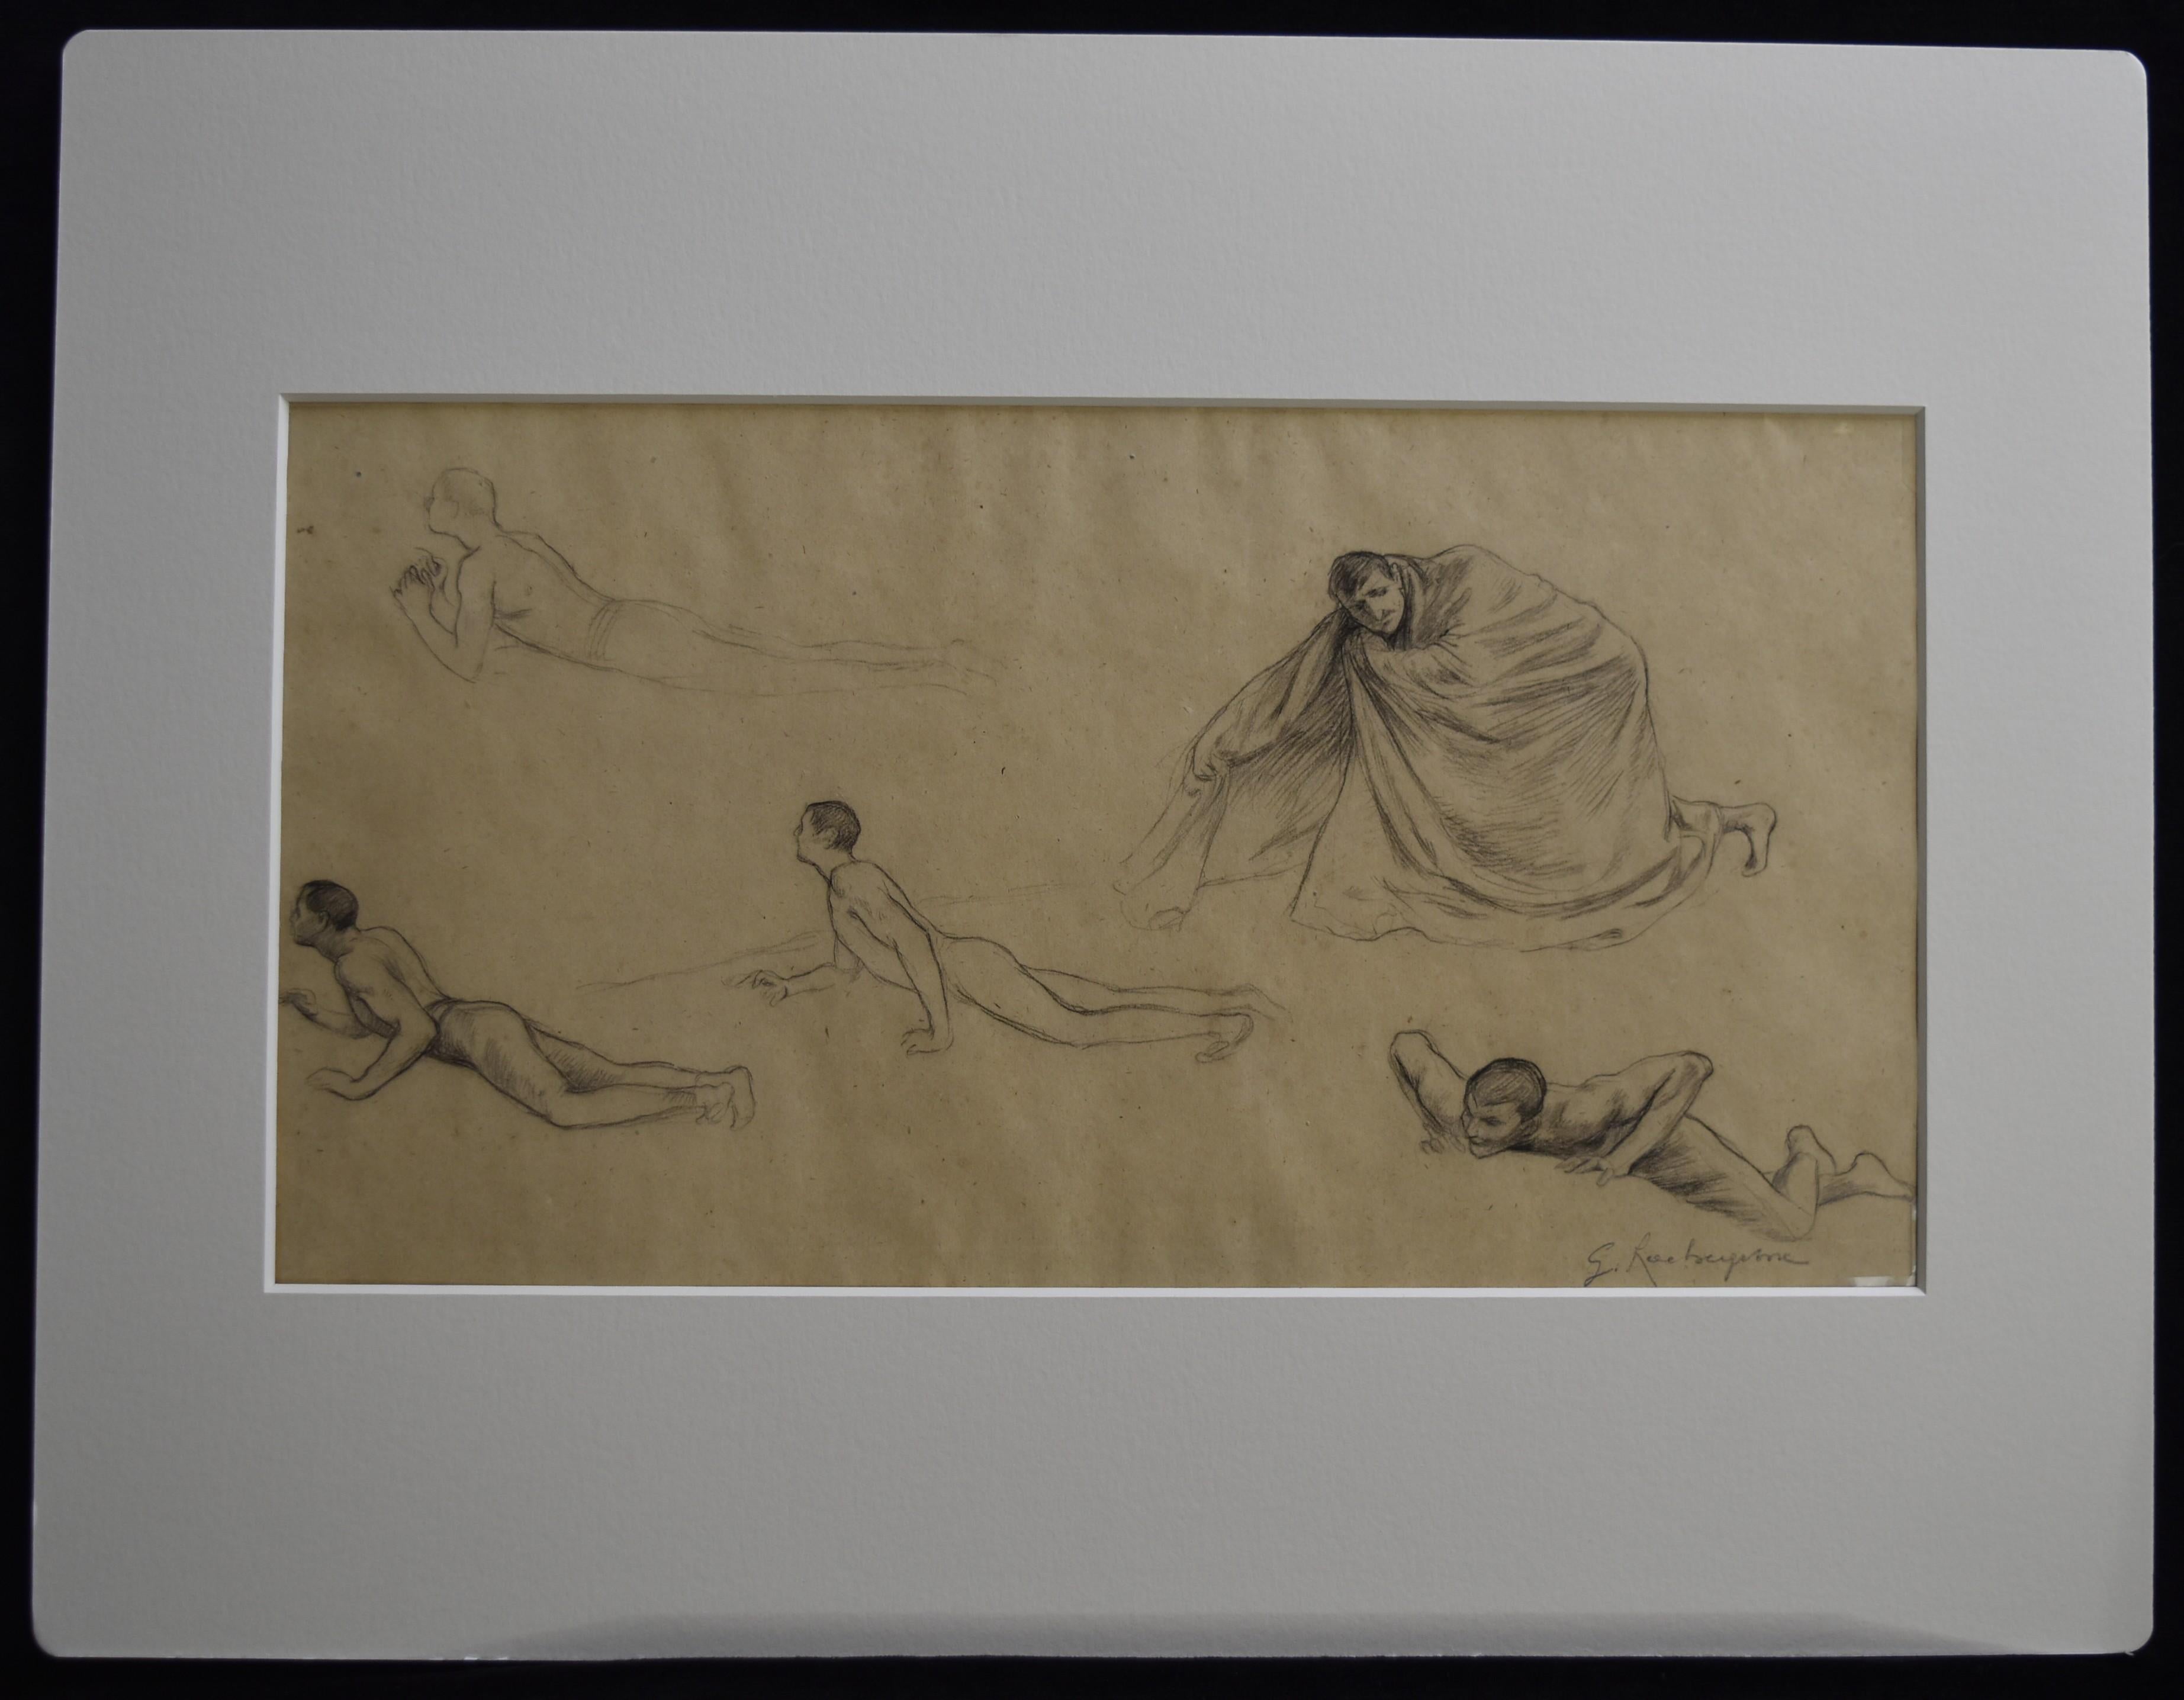 G. A. Rochegrosse (1859-1938) Studien von Männern, Originalzeichnung – Art von Georges Antoine Rochegrosse